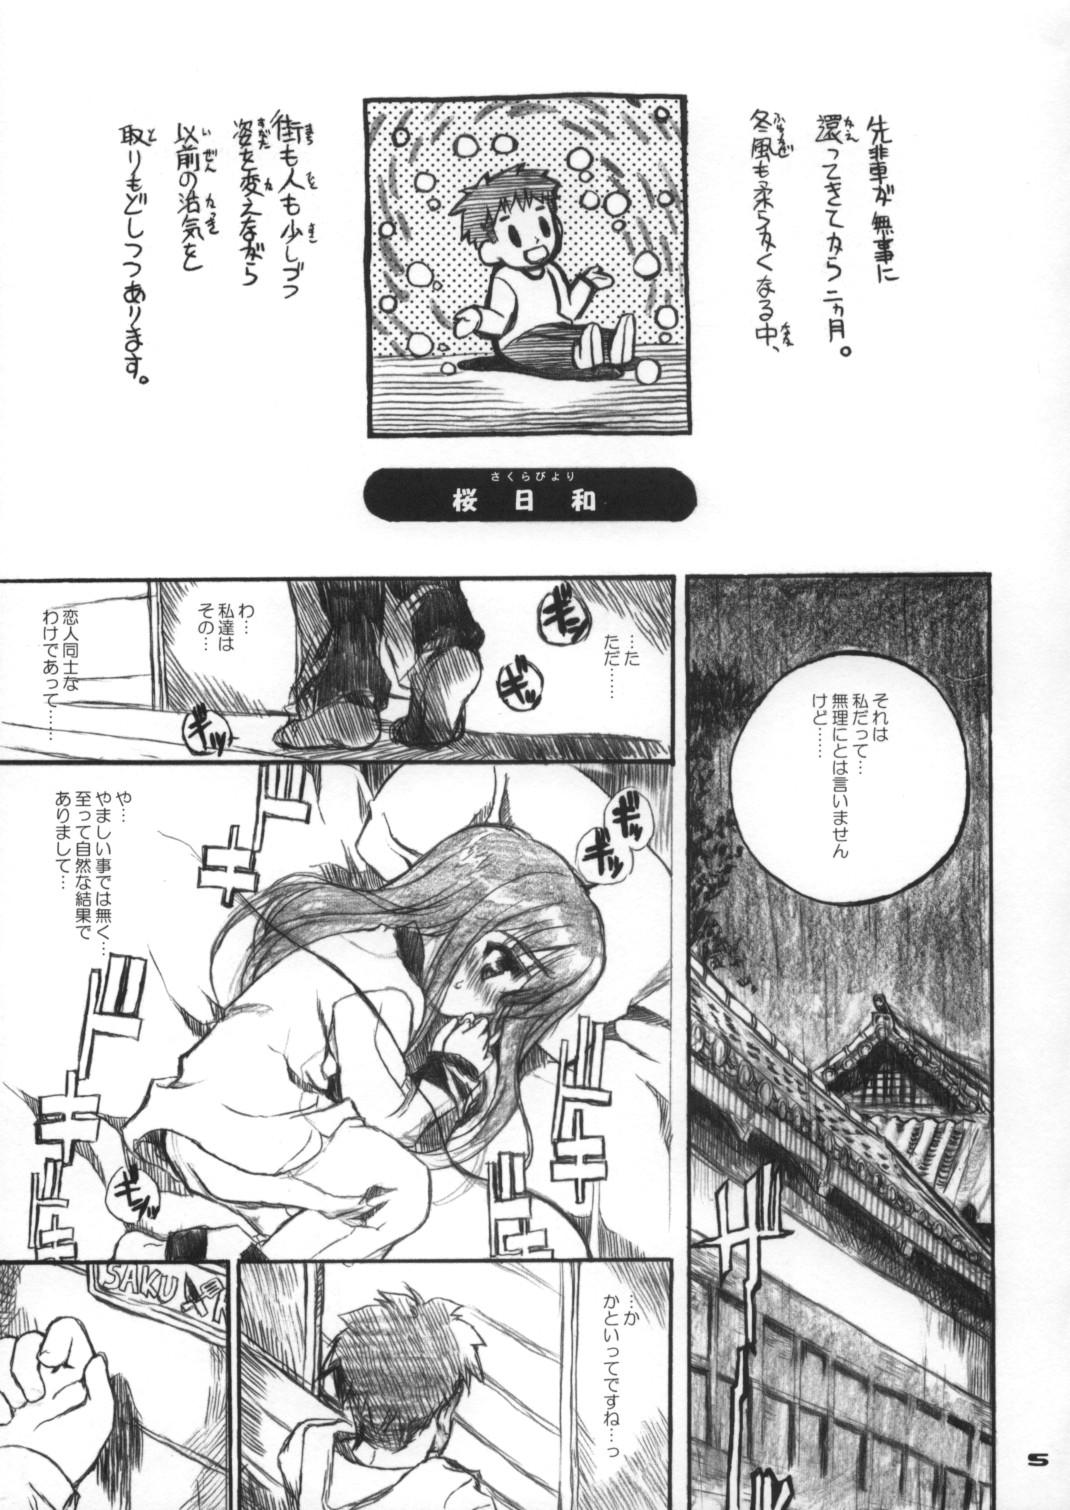 Blowjob Porn Neko-bus Tei no Hon Vol.6 Sakurabiyori - Fate stay night Hard Cock - Page 4